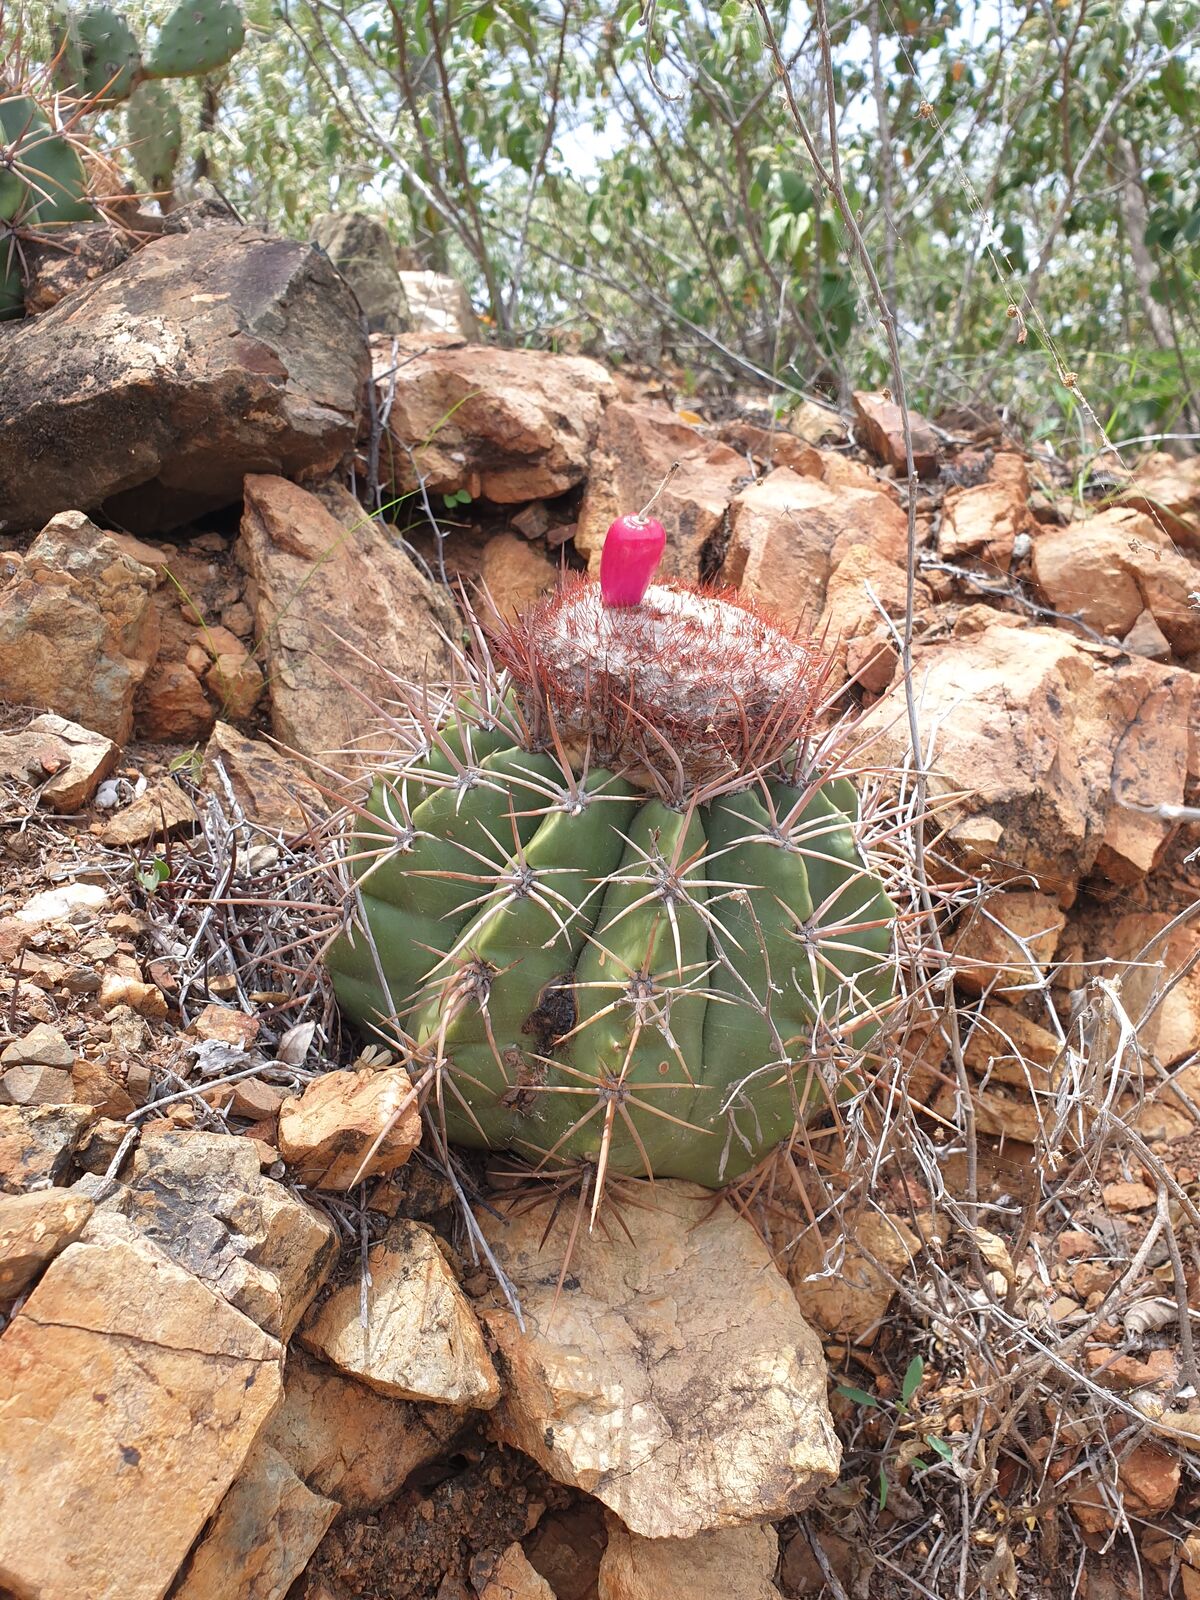 Ein seltener Anblick: Ein Kaktus trägt eine Frucht.